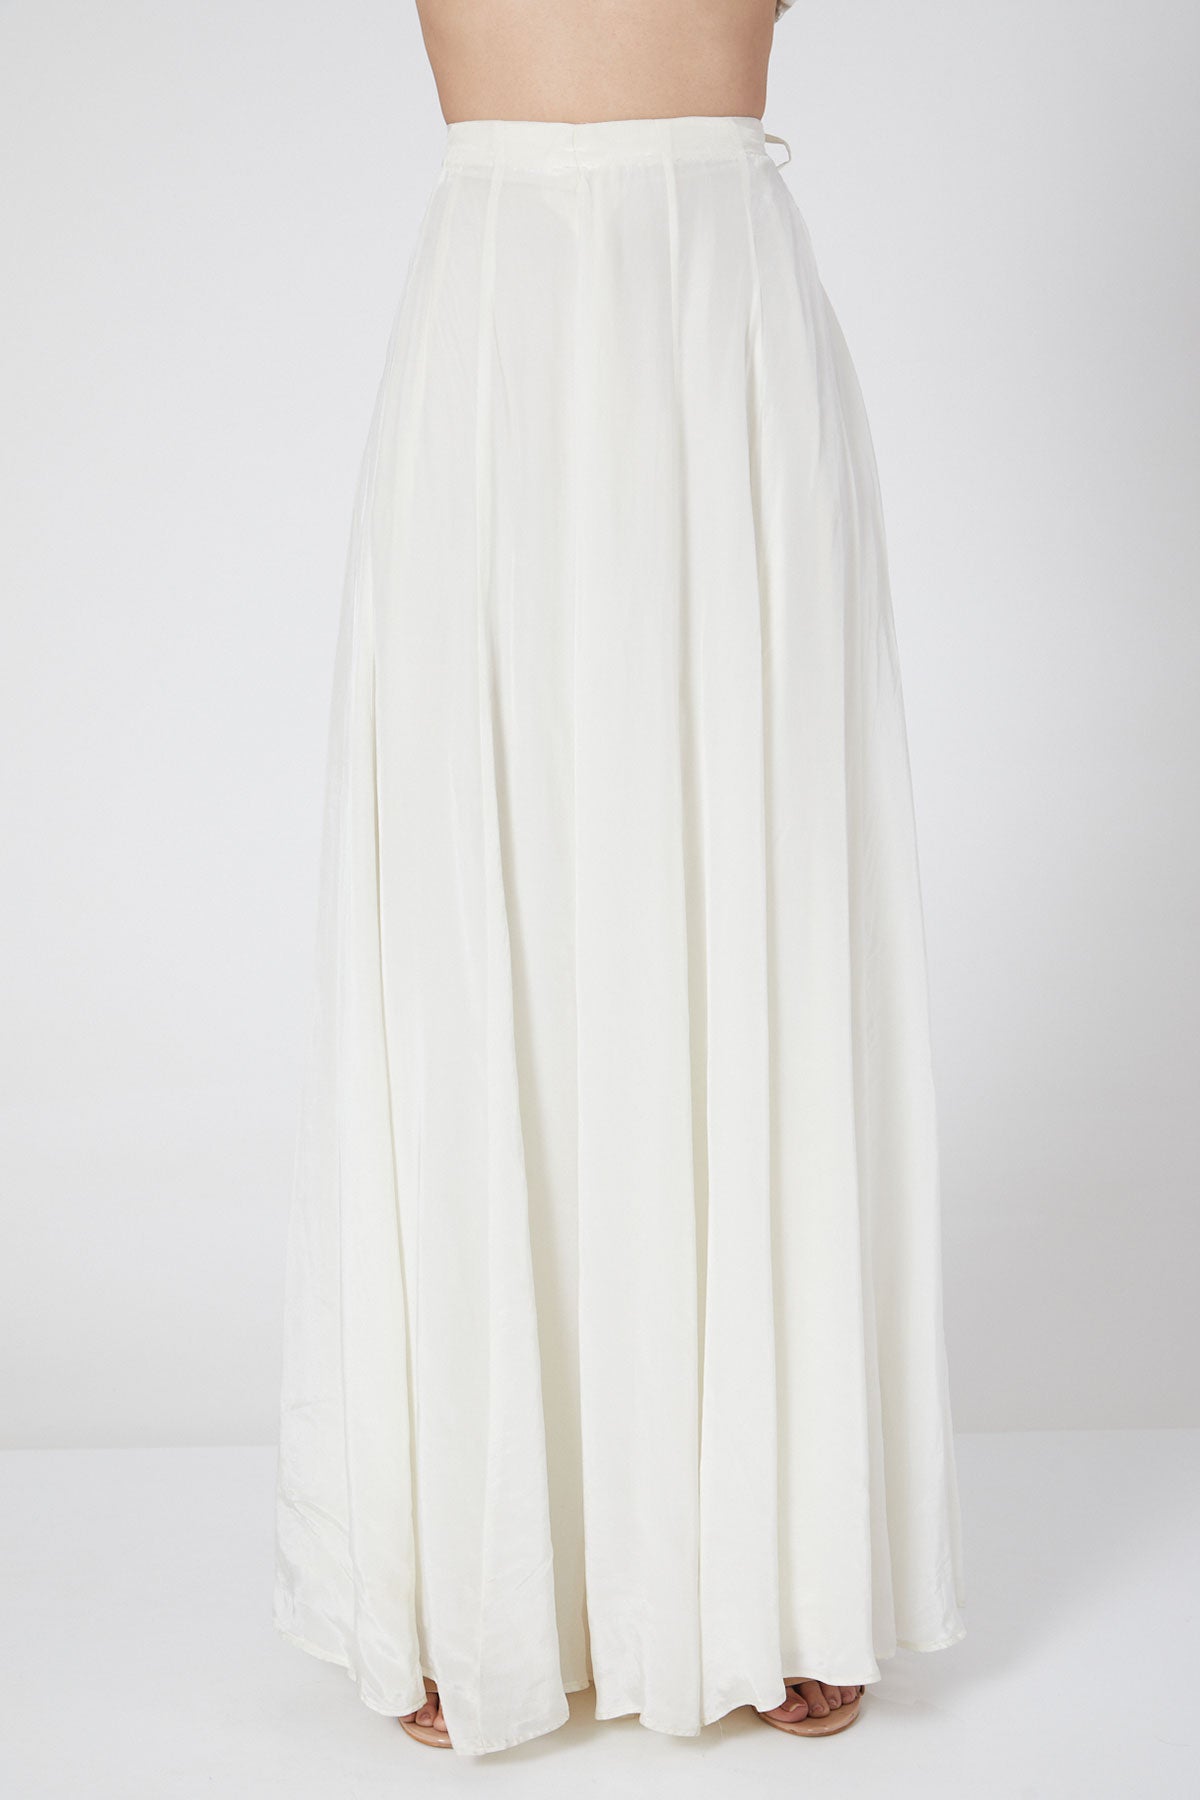 White Skirt And Peplum Top